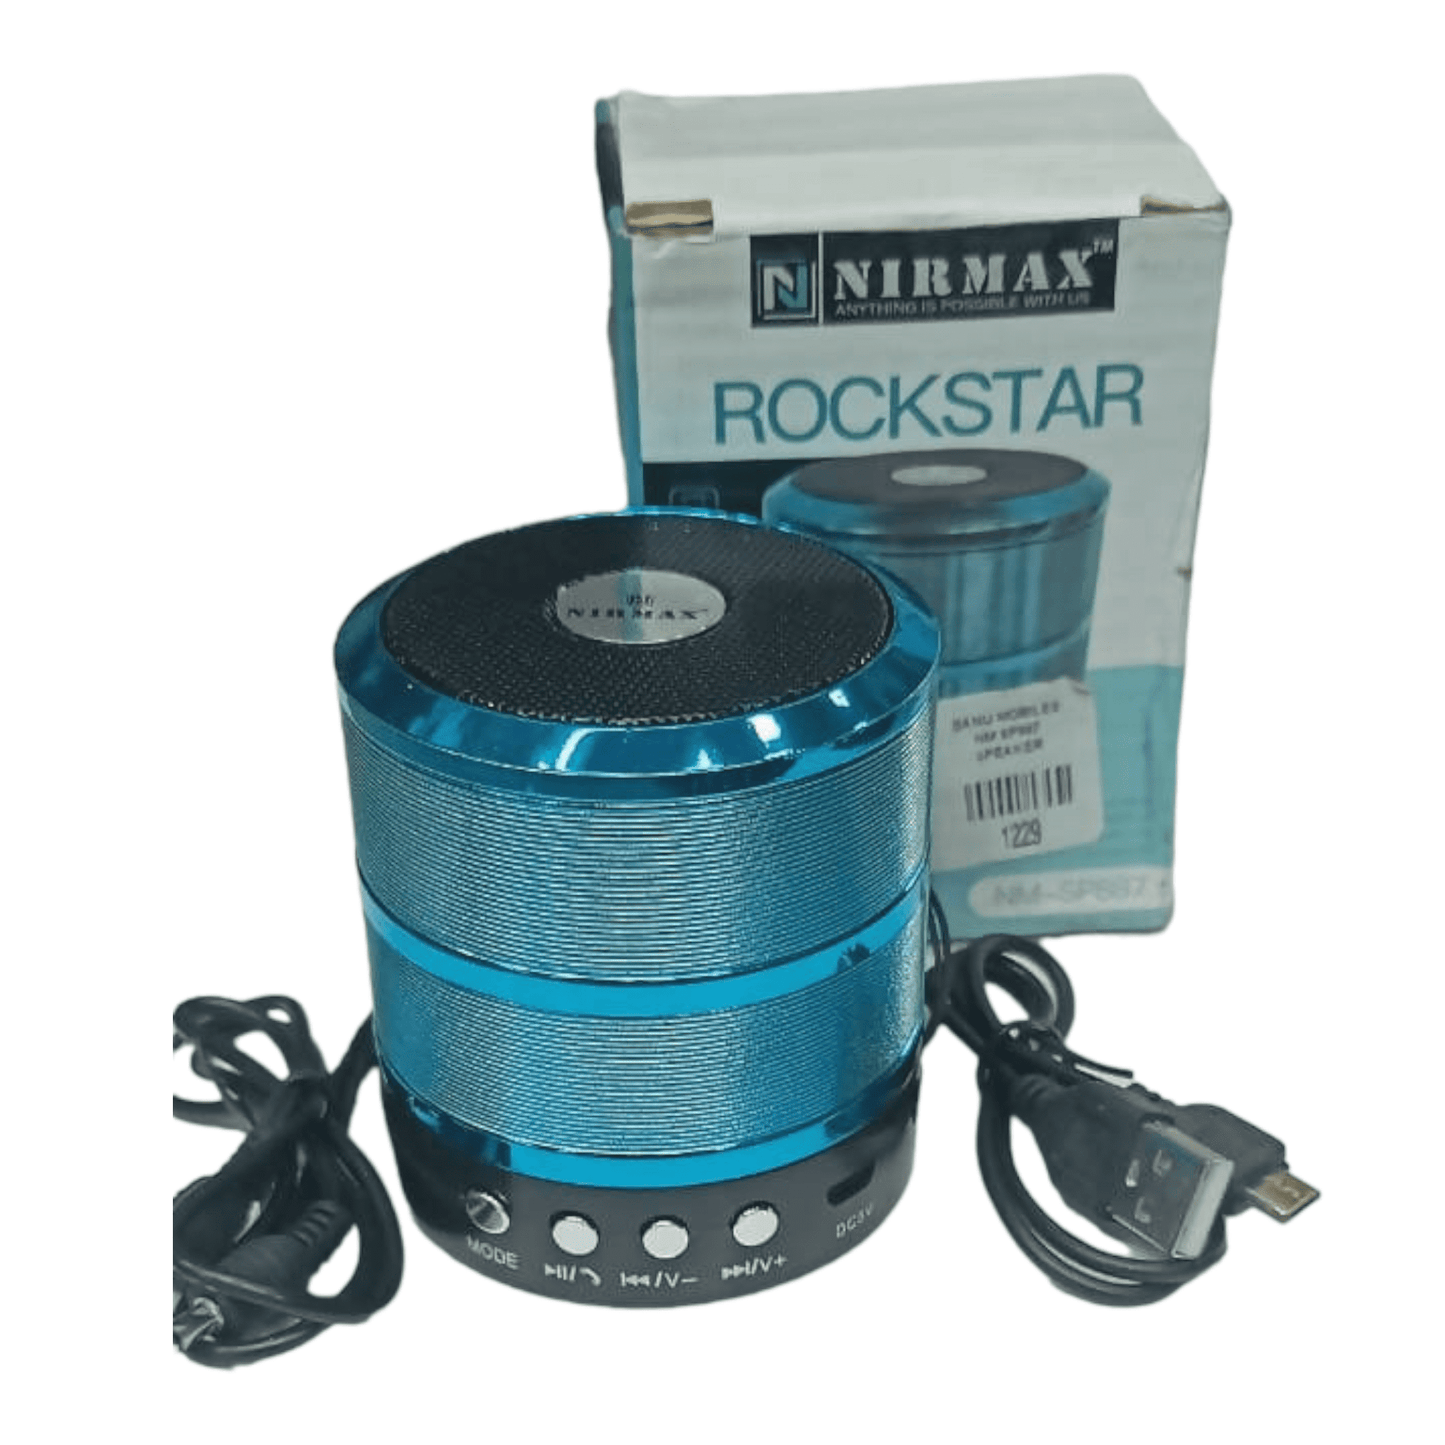 Nirmax Rockstar Bluetooth speaker